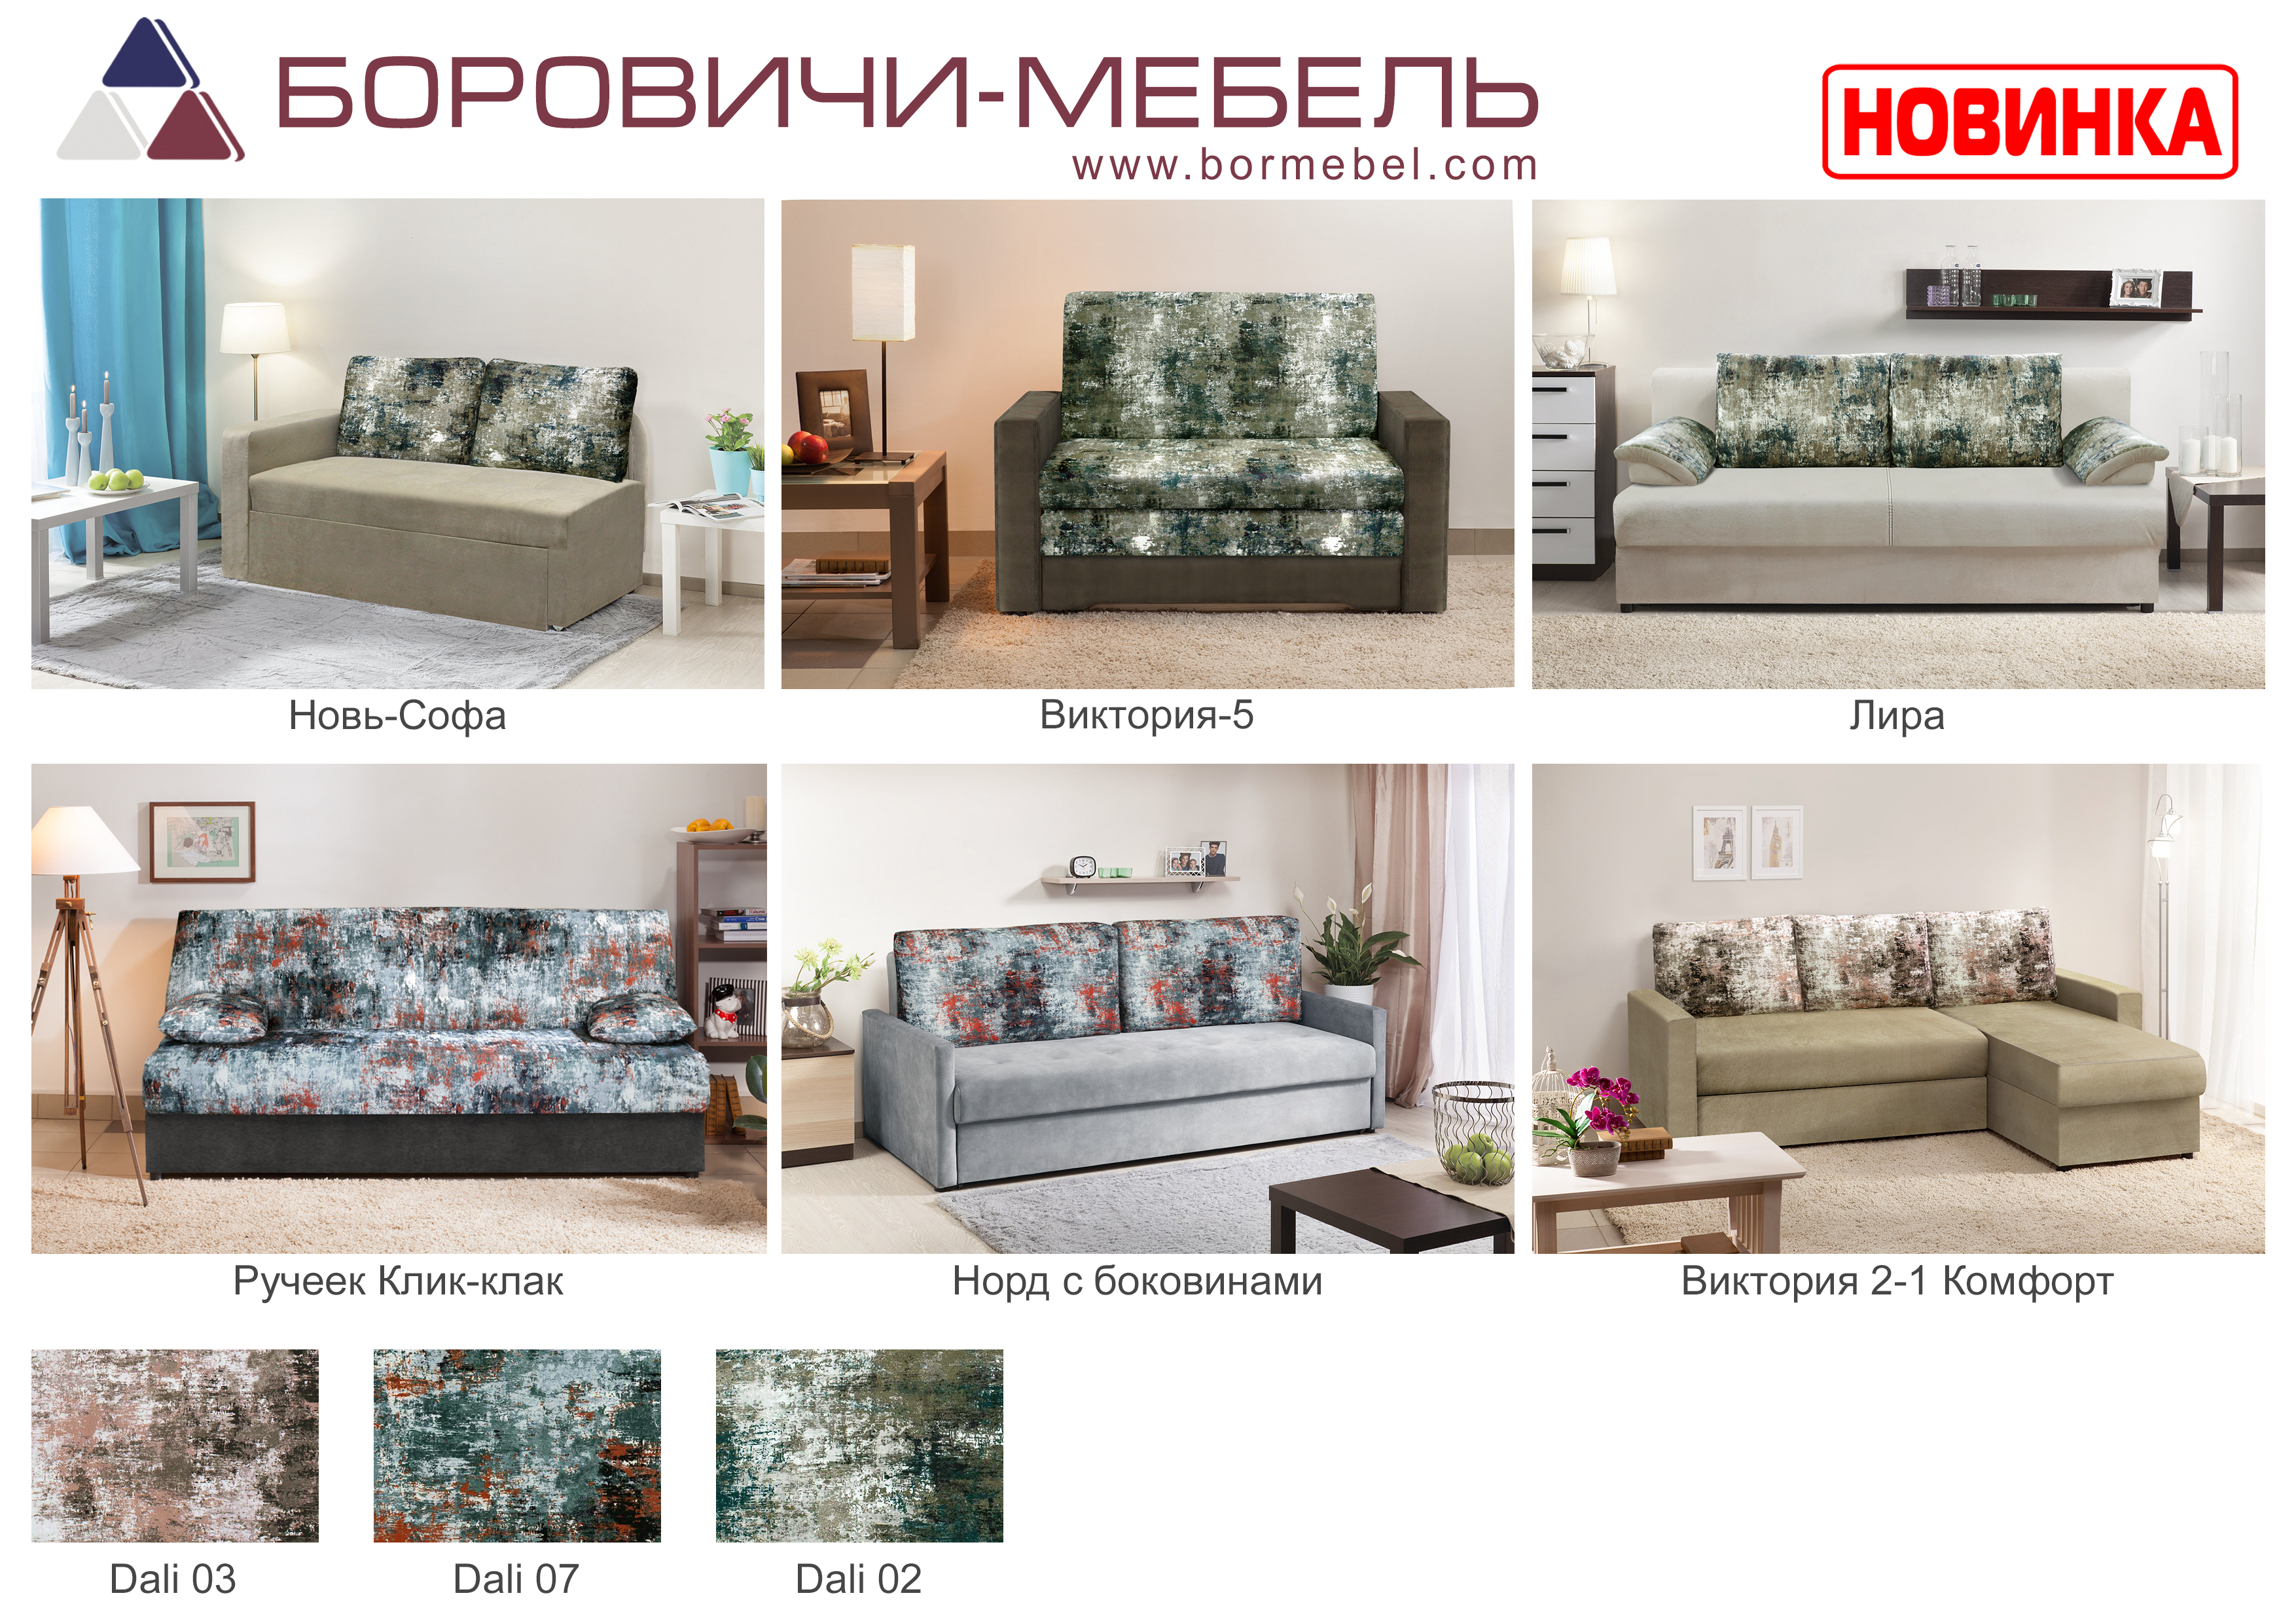 Где Купить Мебель В В Новгороде